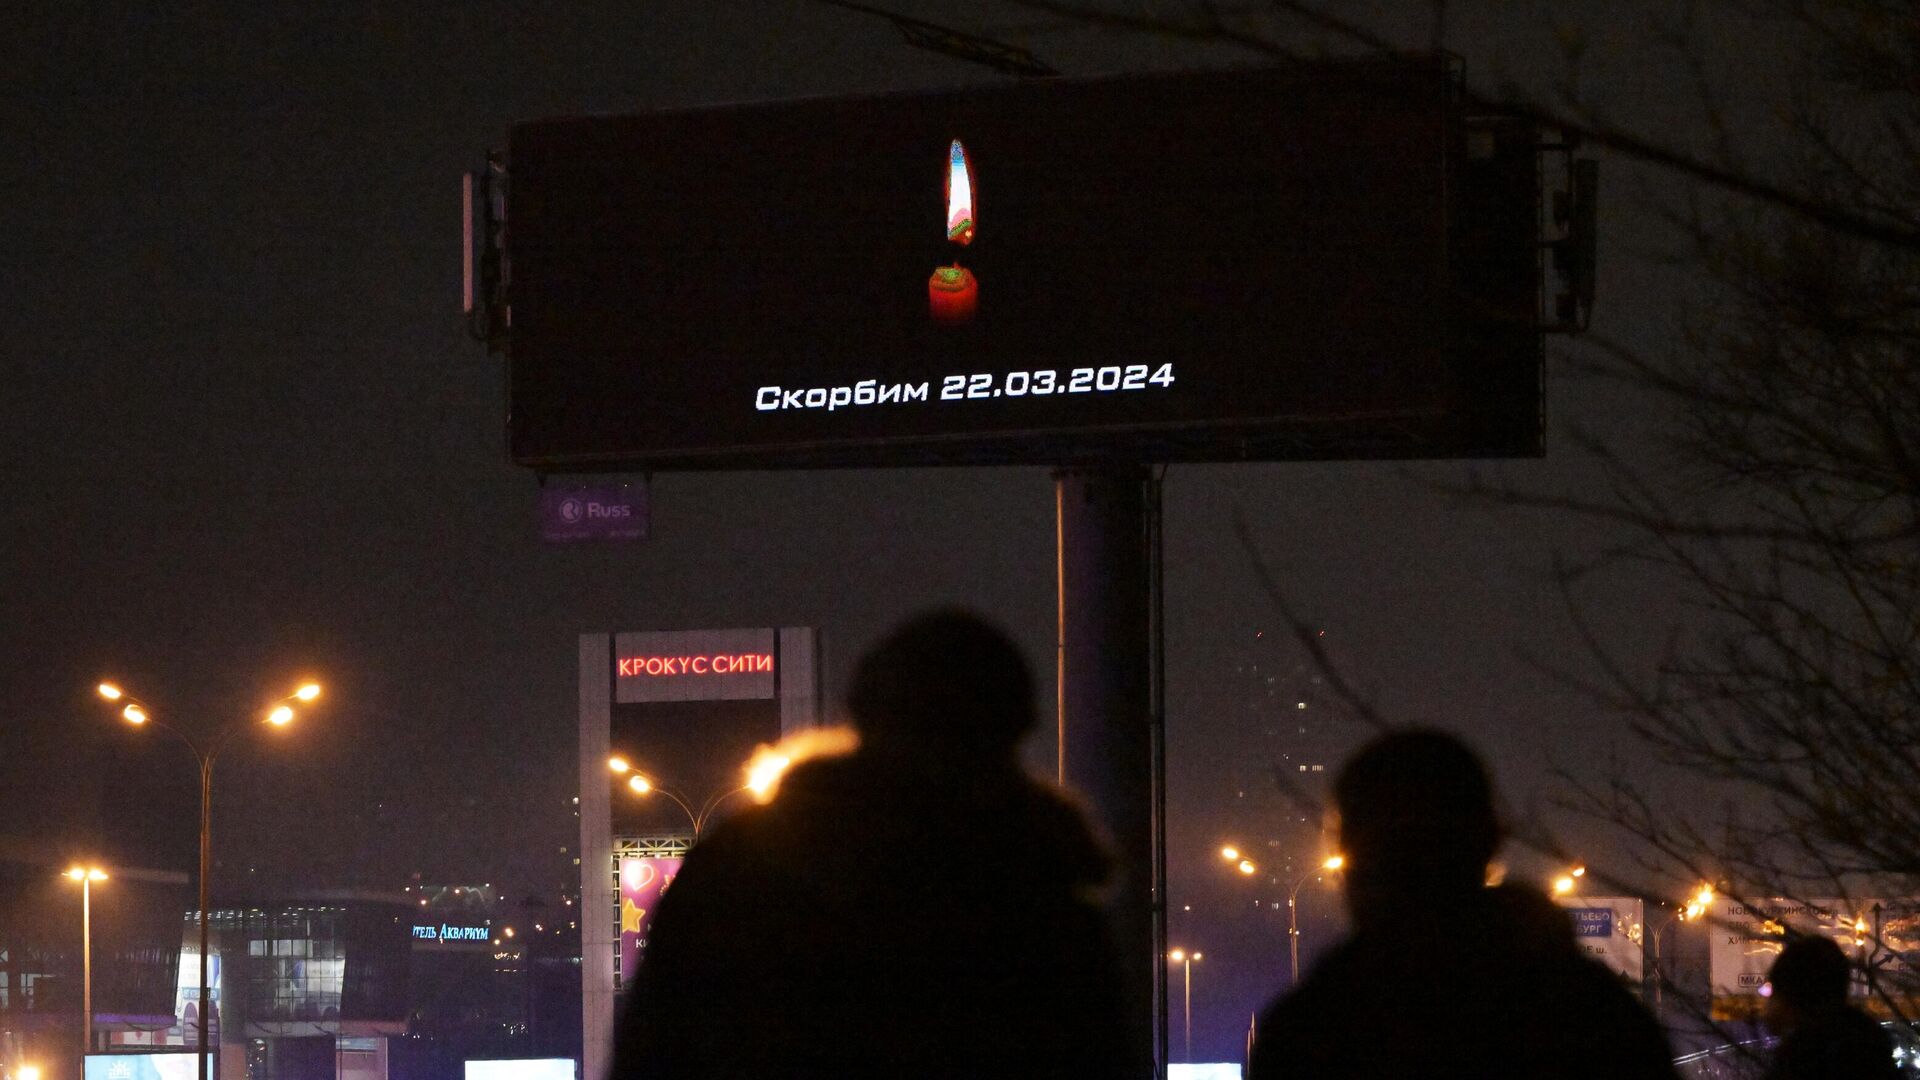 Сообщение Скорбим на рекламном экране, расположенном недалеко от концертного зала Крокус Сити Холл2